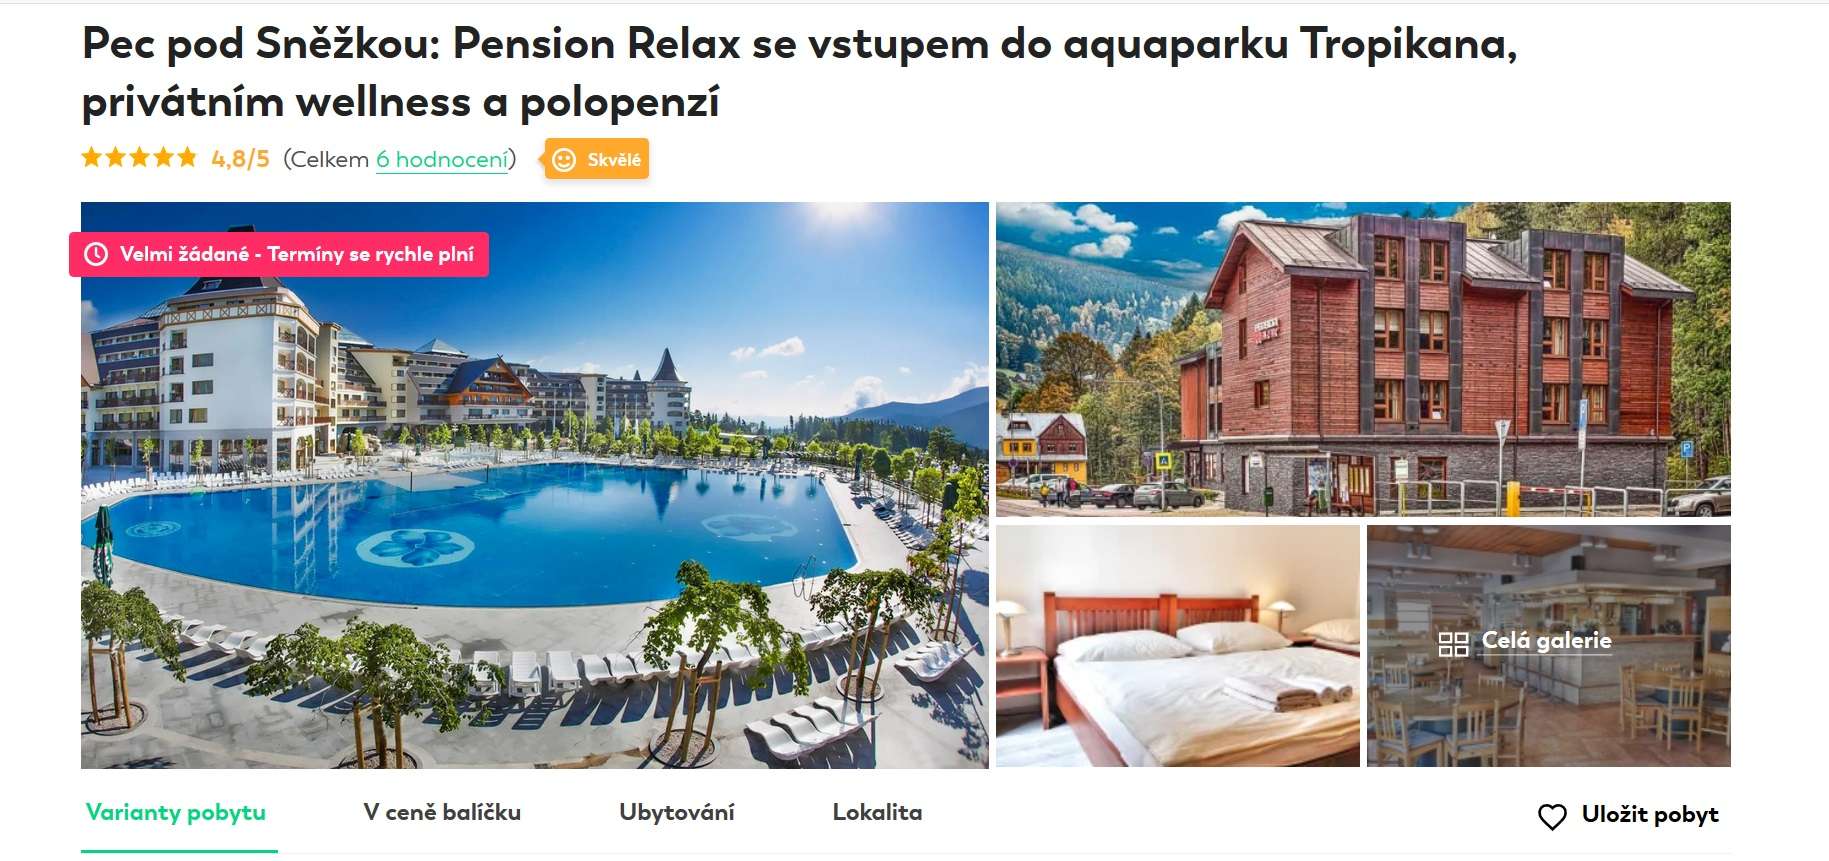 dovolená v česku, penzion Relax, Travelking